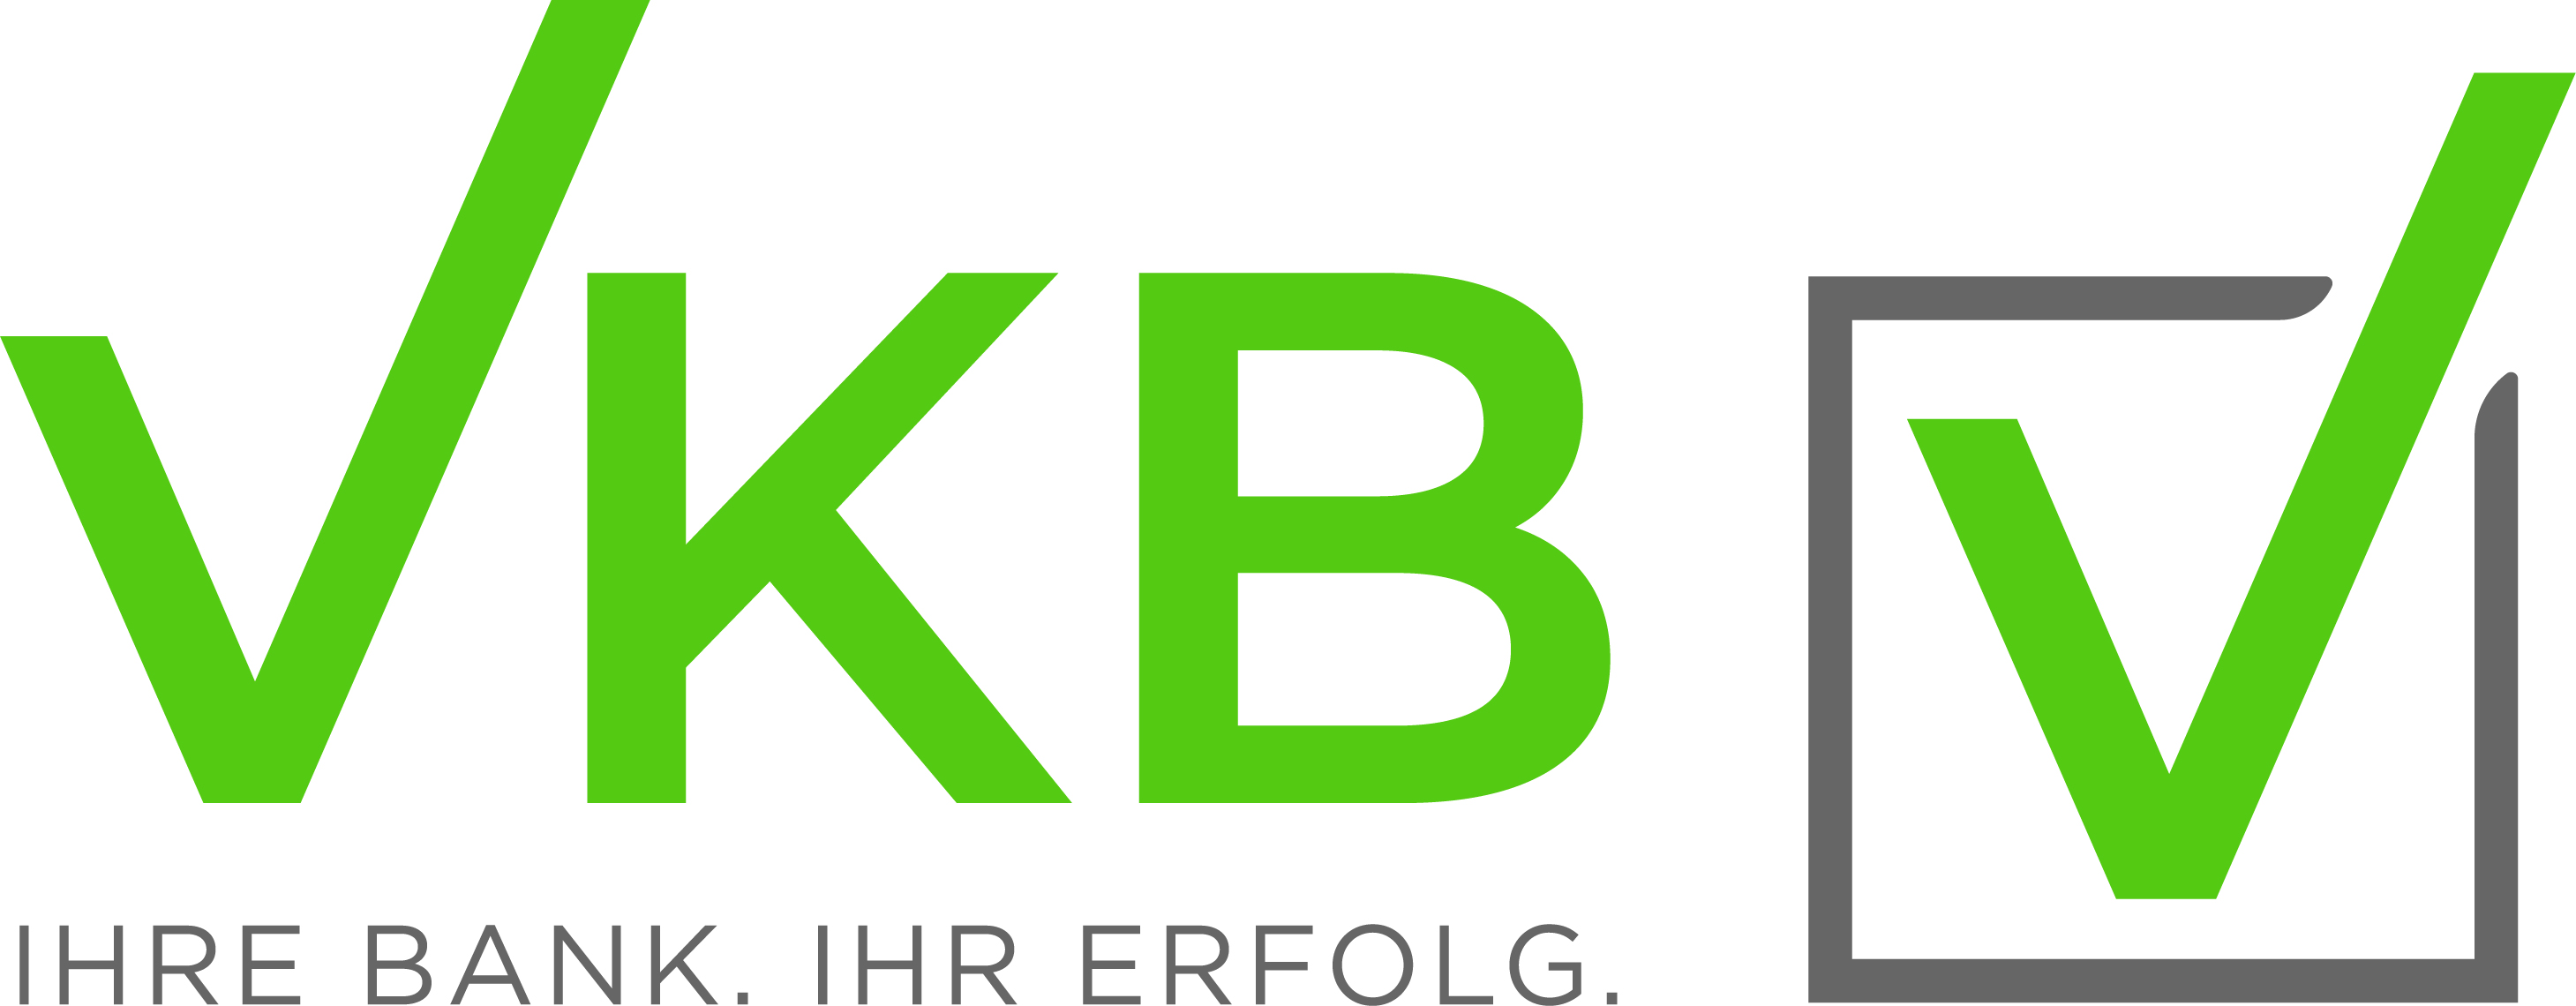 VKB Wortbildmarke Claim RGB